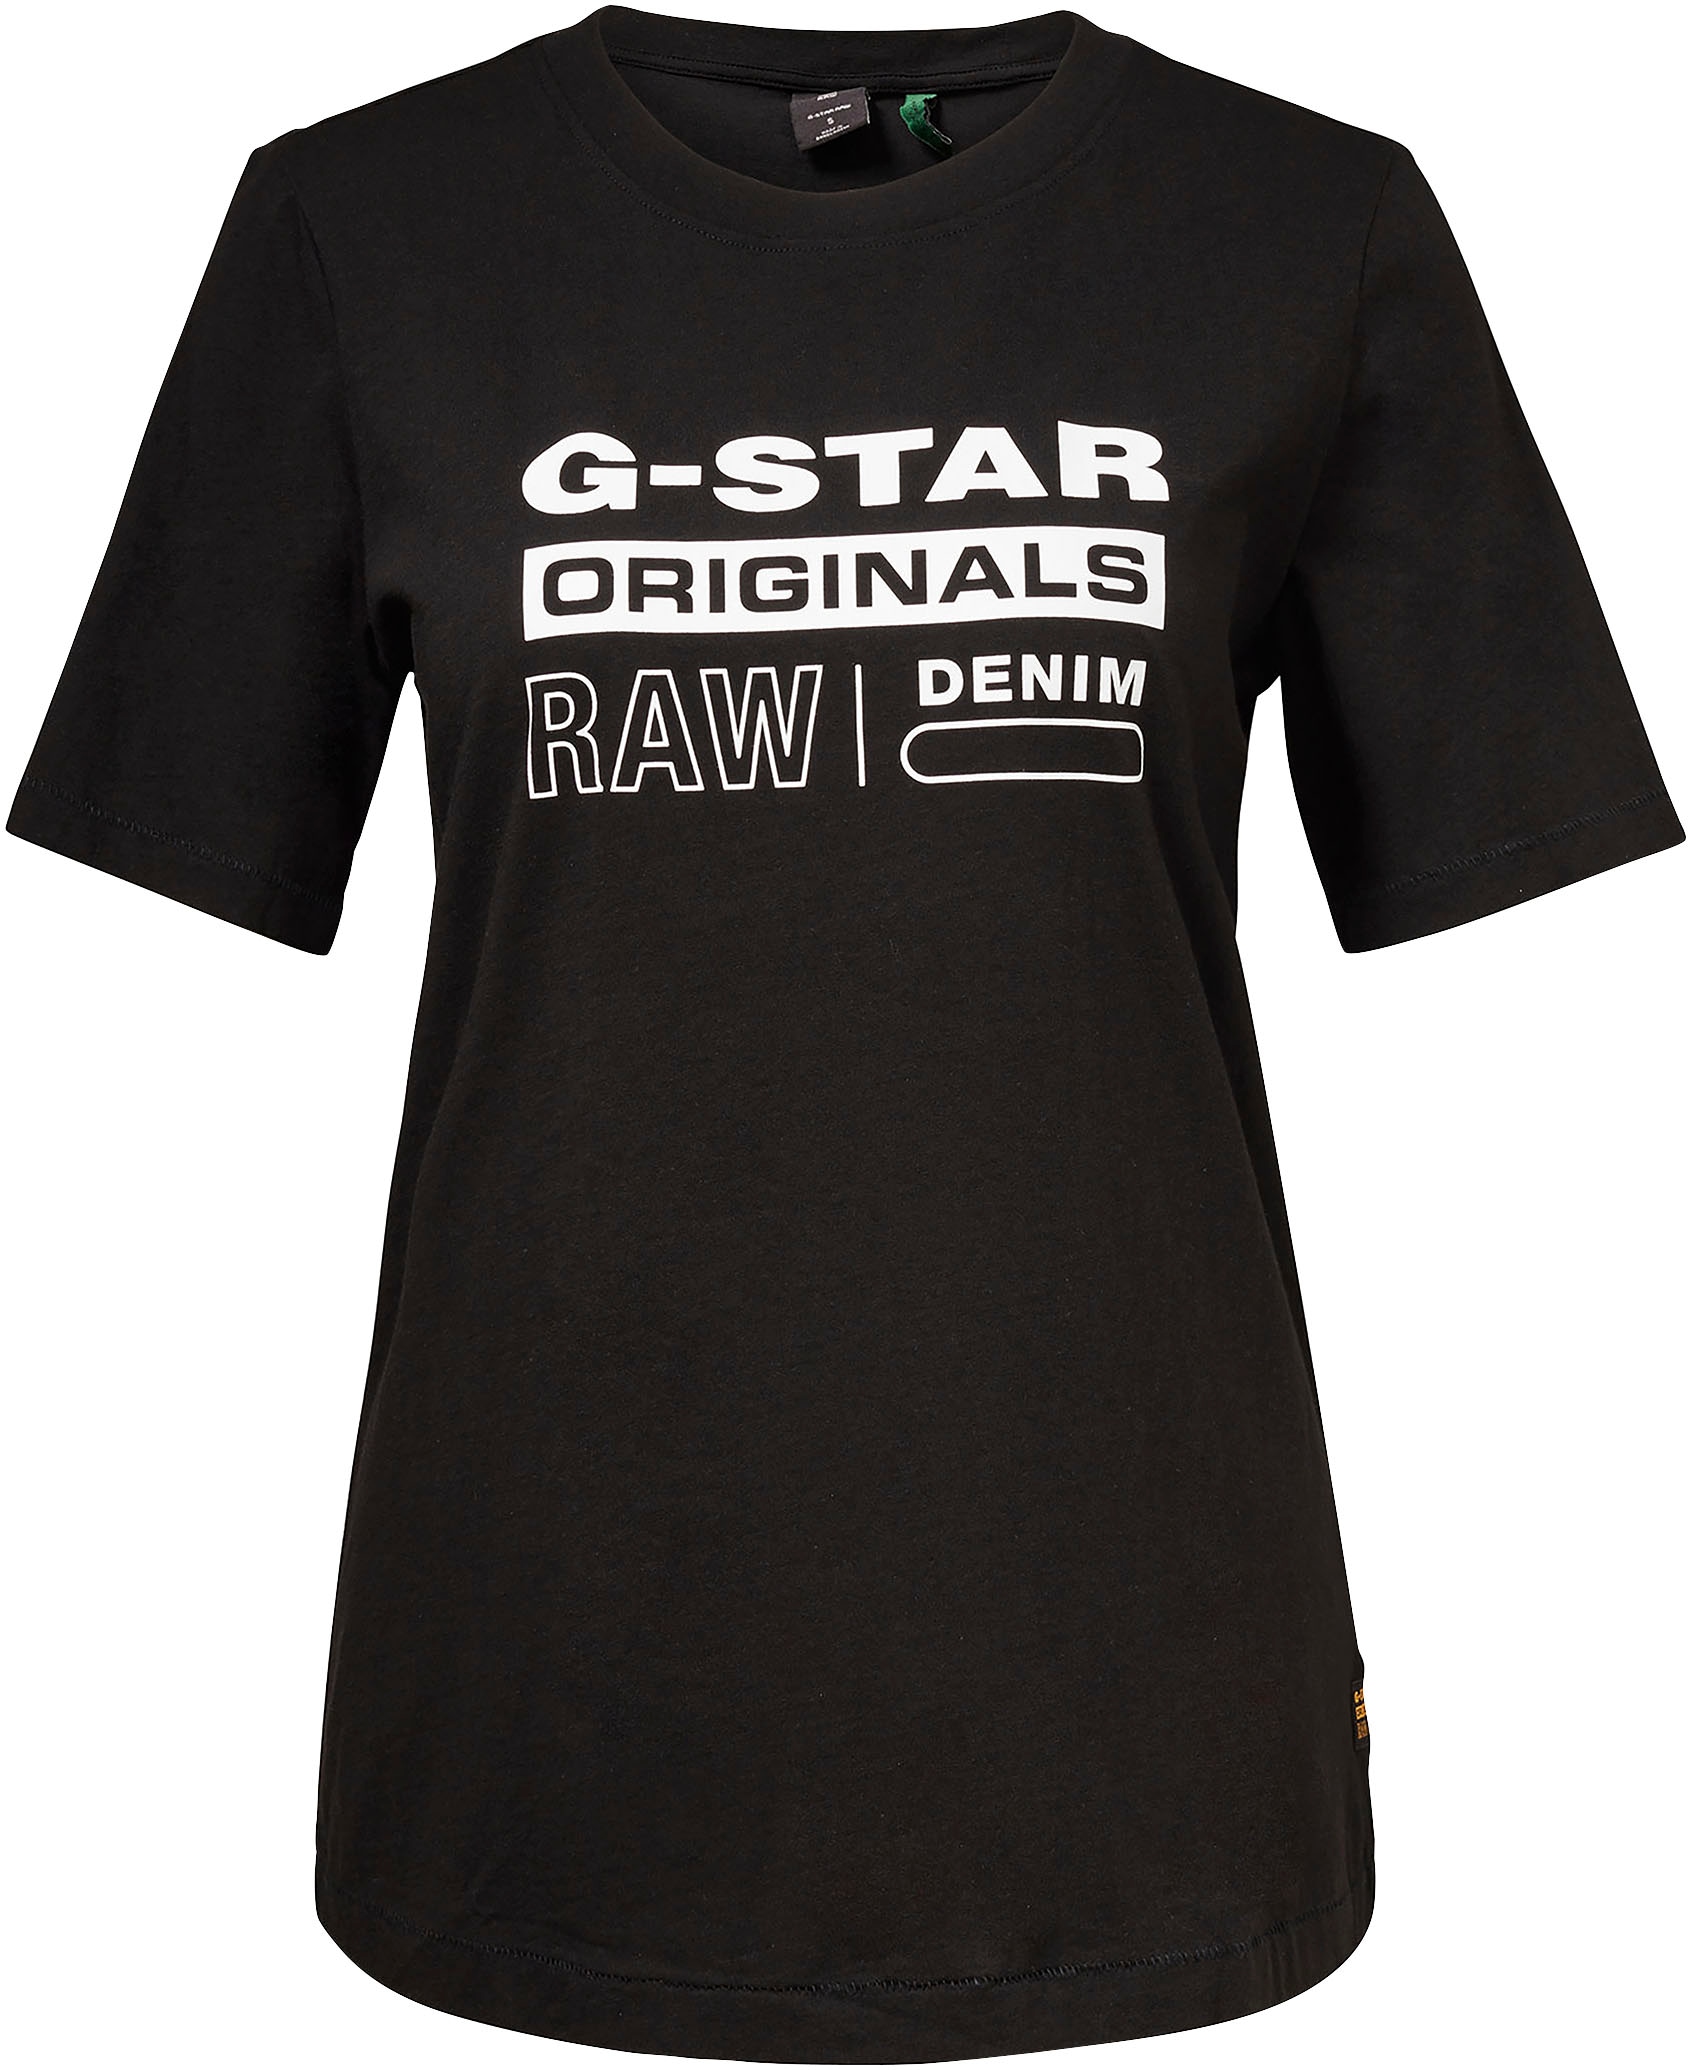 RAW kaufen regular«, label walking »Originals I\'m G-Star mit T-Shirt Frontdruck |